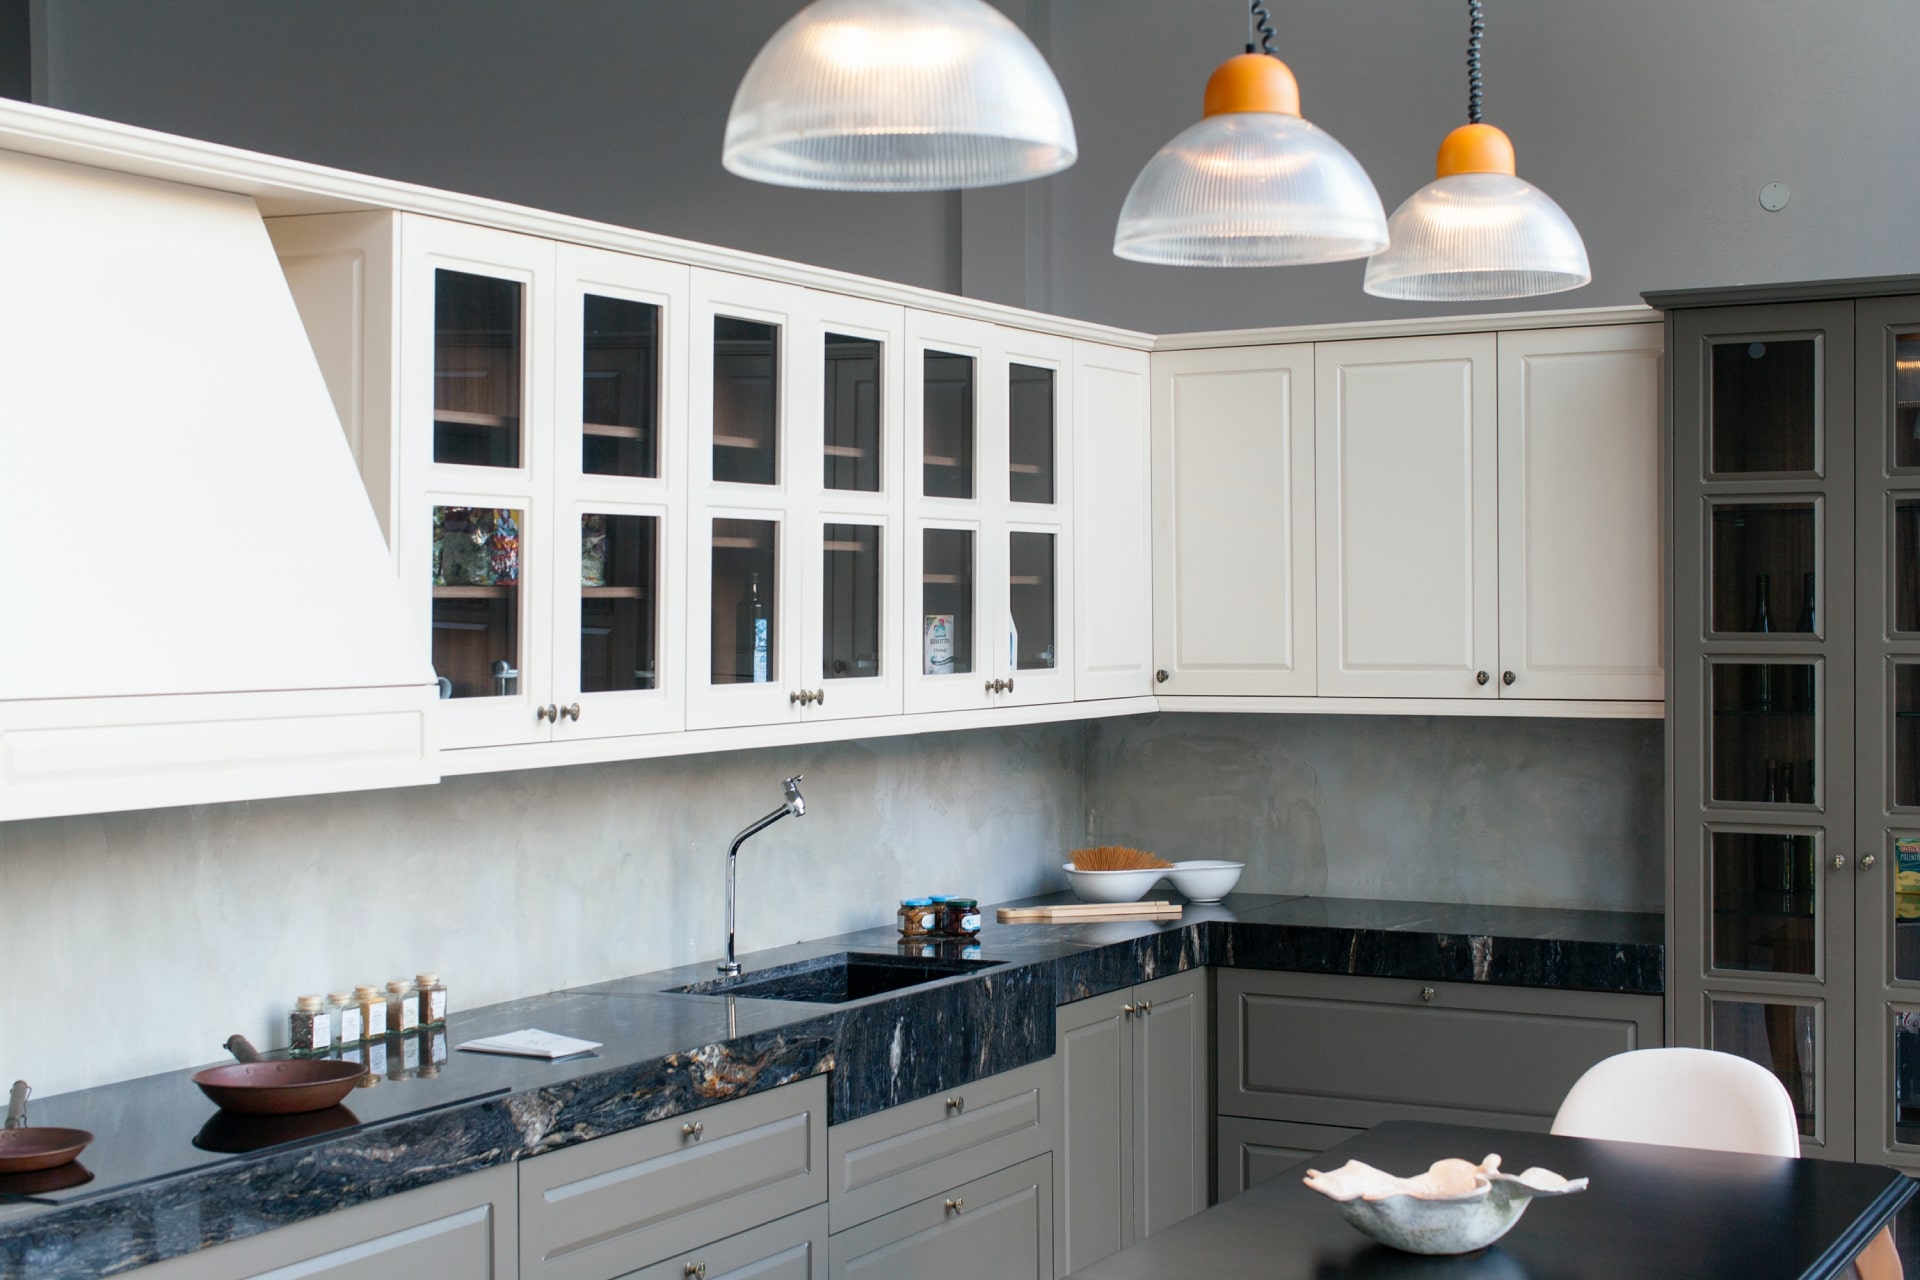 Imagen de una cocina moderna y espaciosa. Combina armarios superiores blancos con gabinetes grises y una encimera de mármol negra